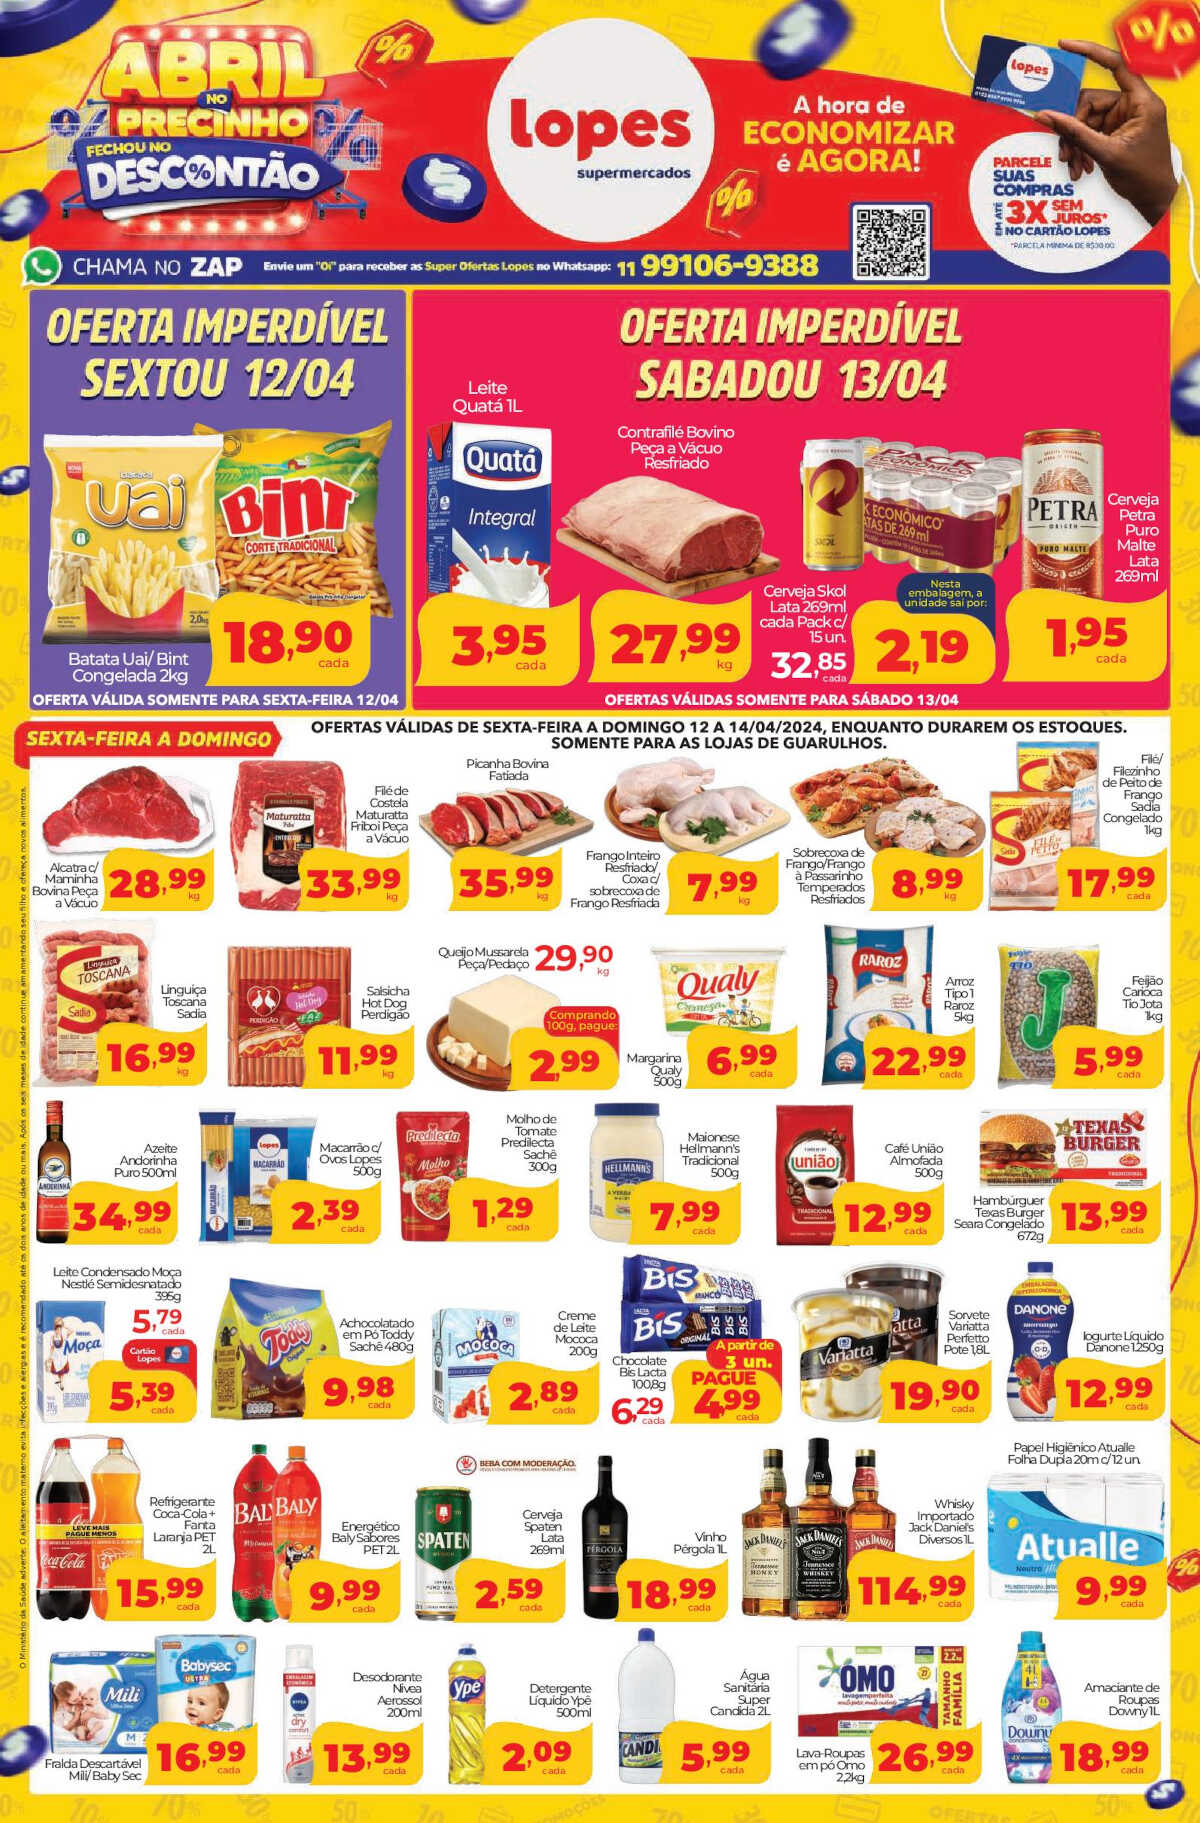 Ofertas Lopes Supermercados até 18/04